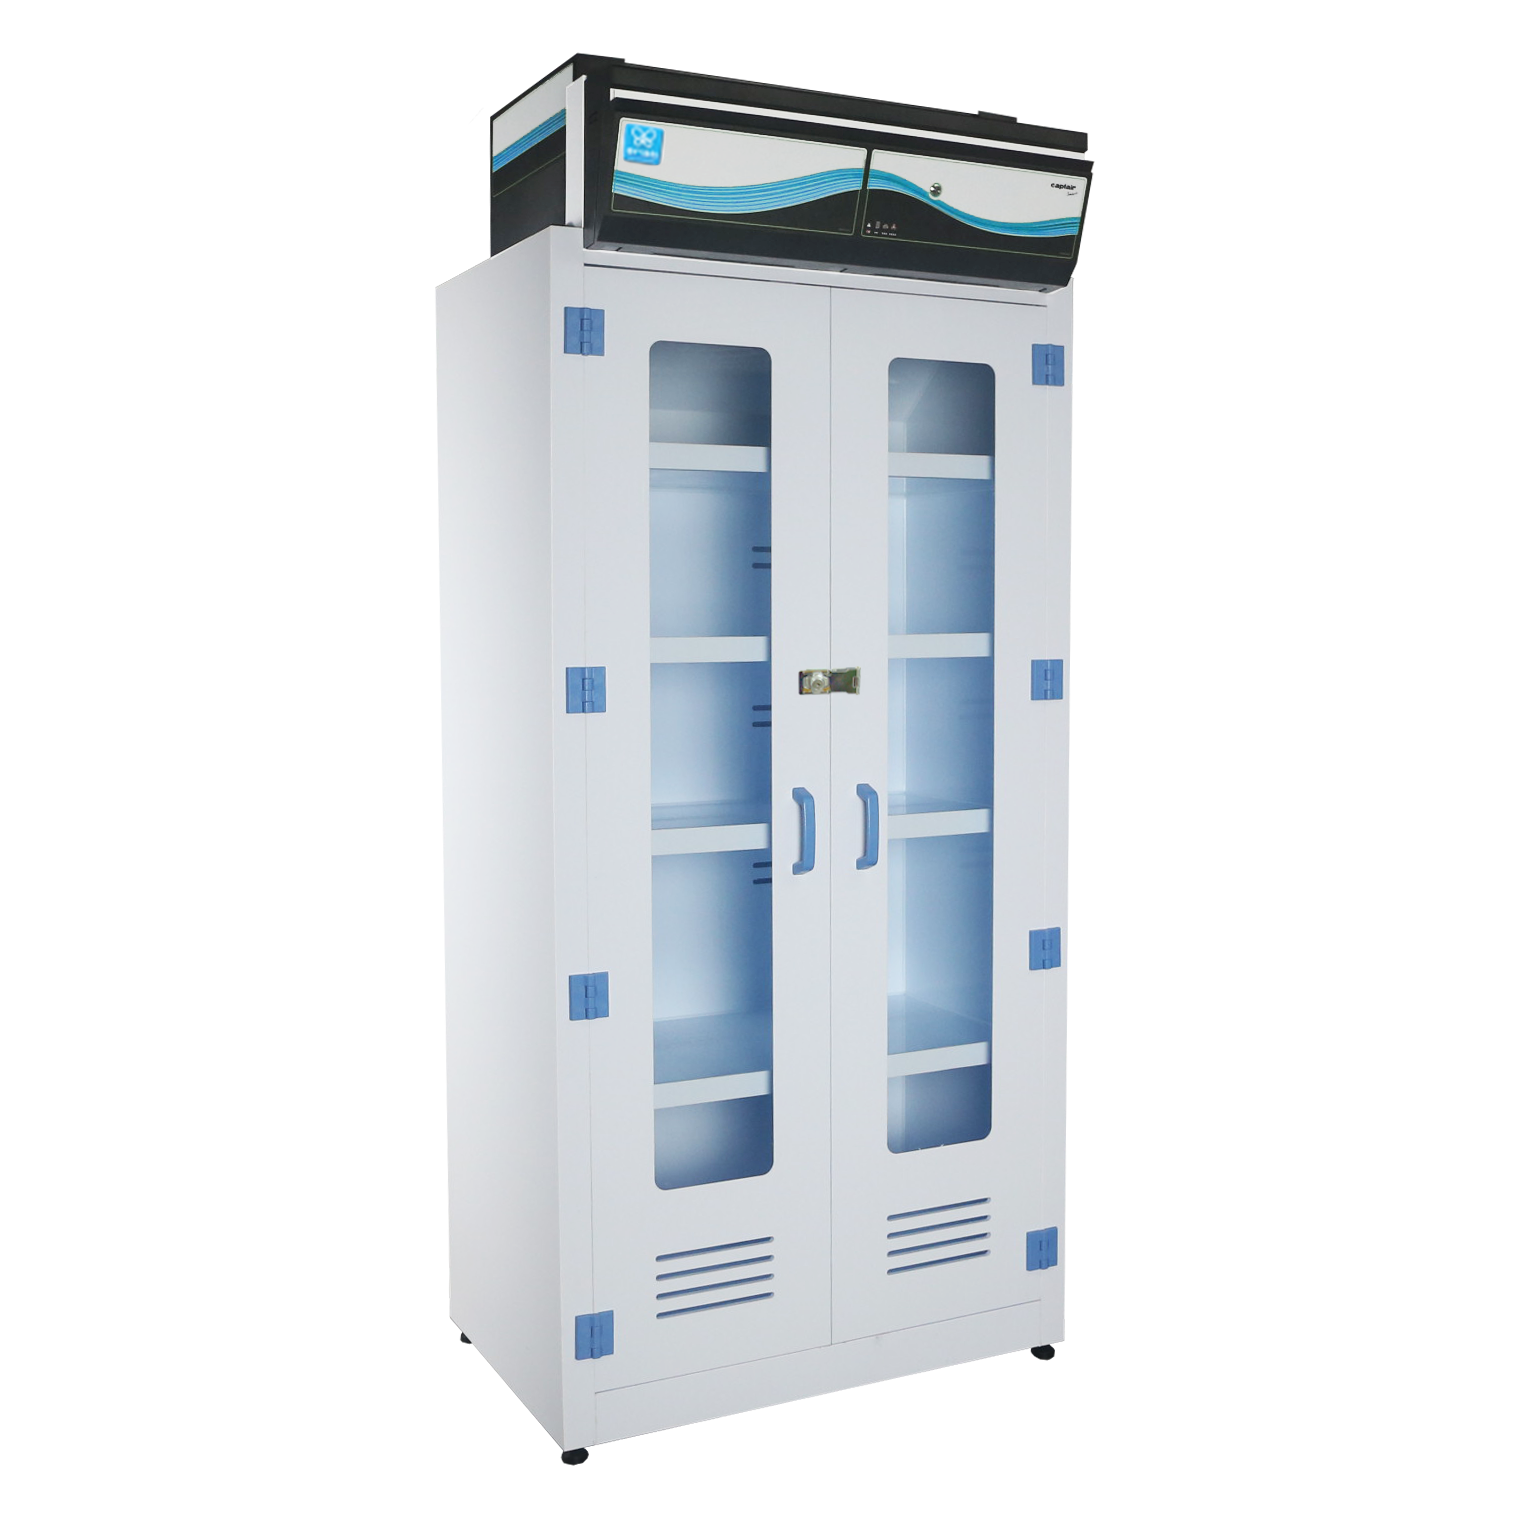  內循環淨氣型藥品儲存櫃 